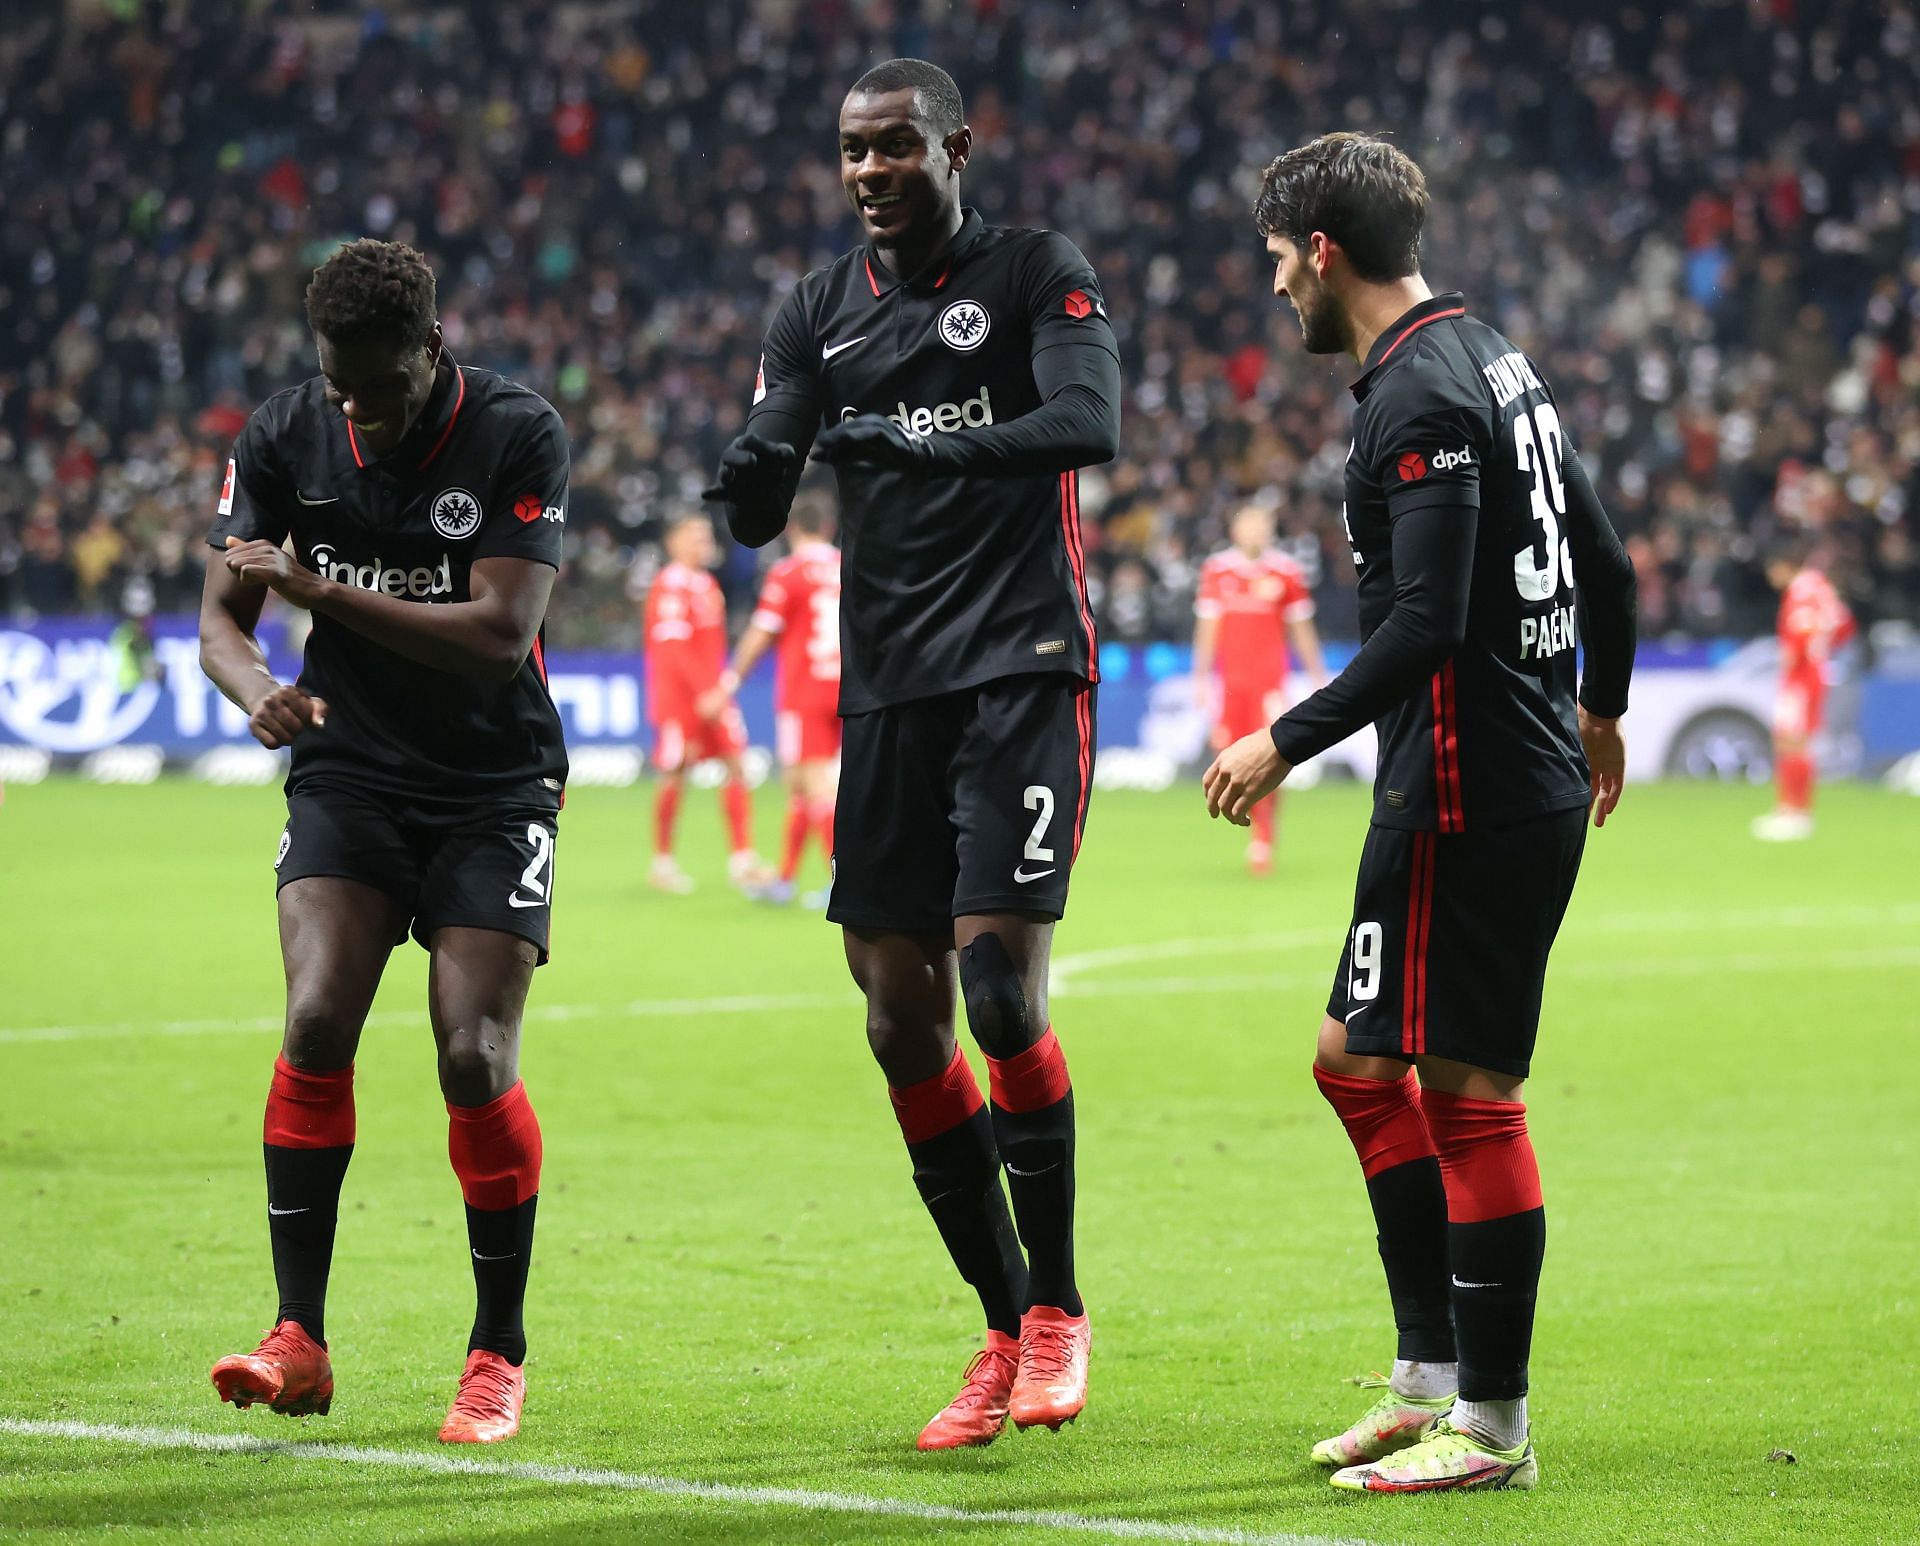 Eintracht Frankfurt play Fenerbahce on Thursday